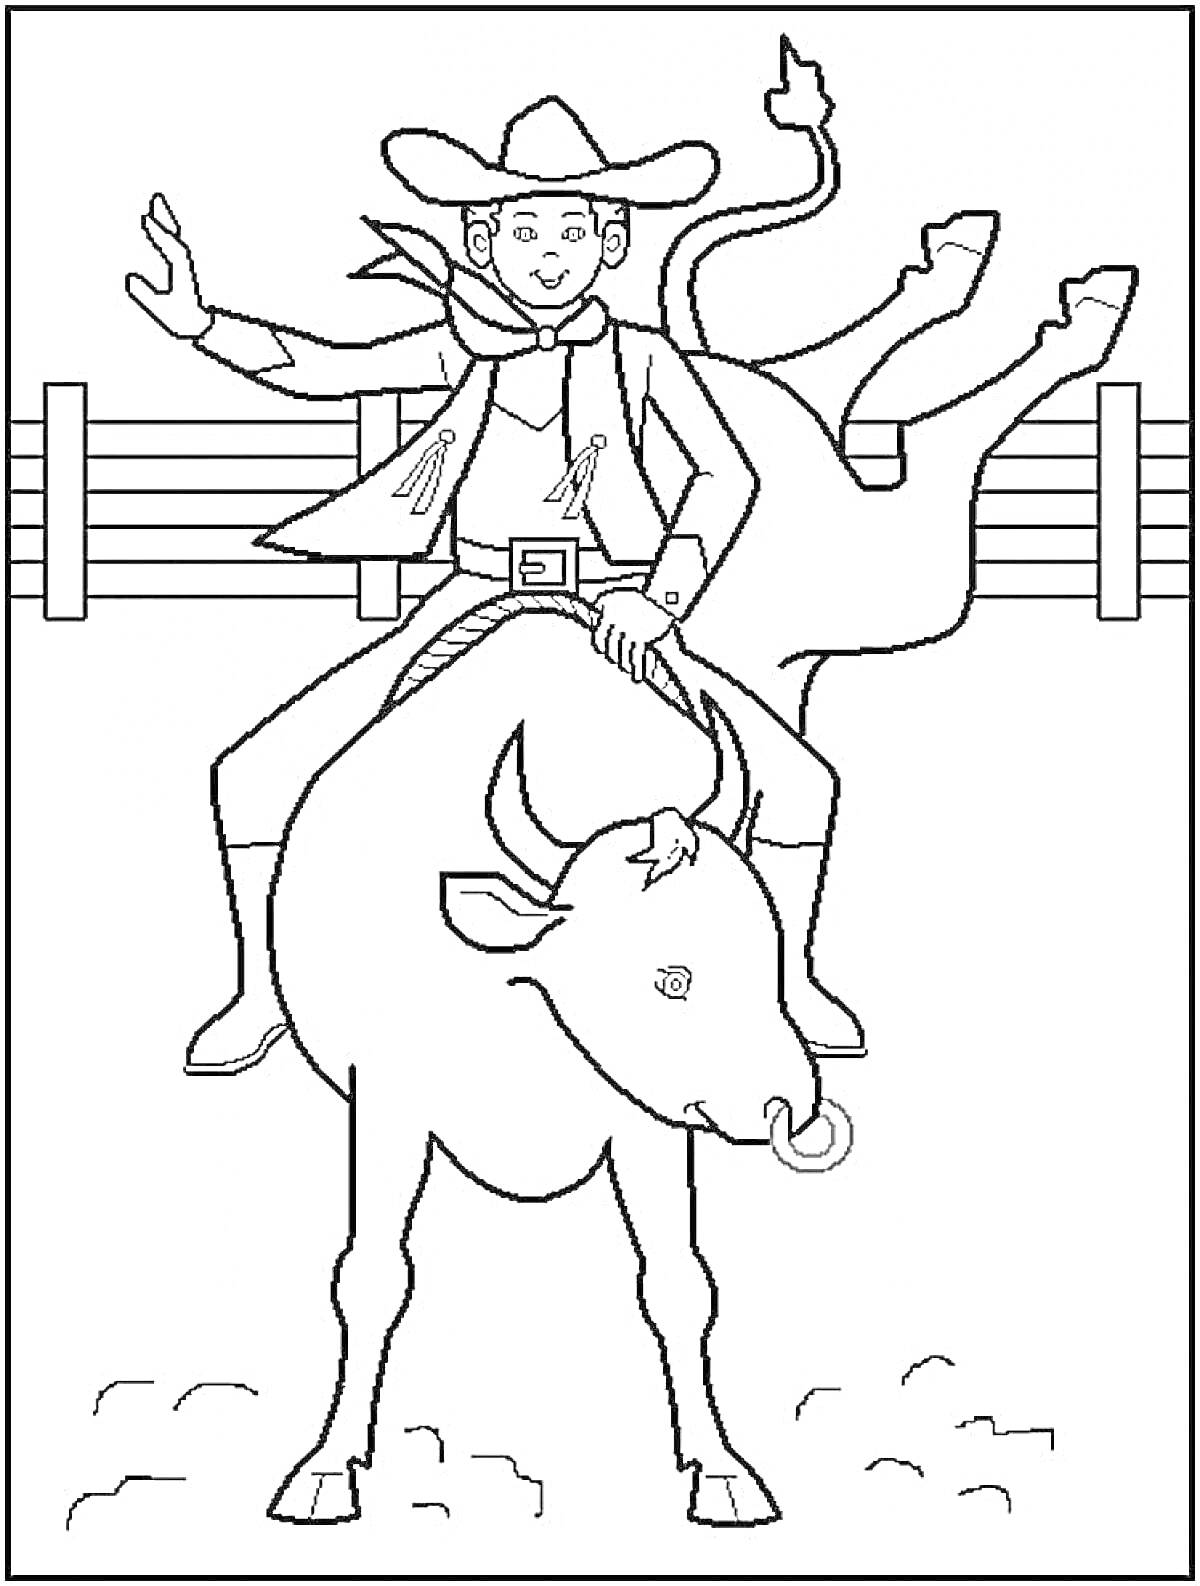 Раскраска Ковбой на быке с забором на заднем плане